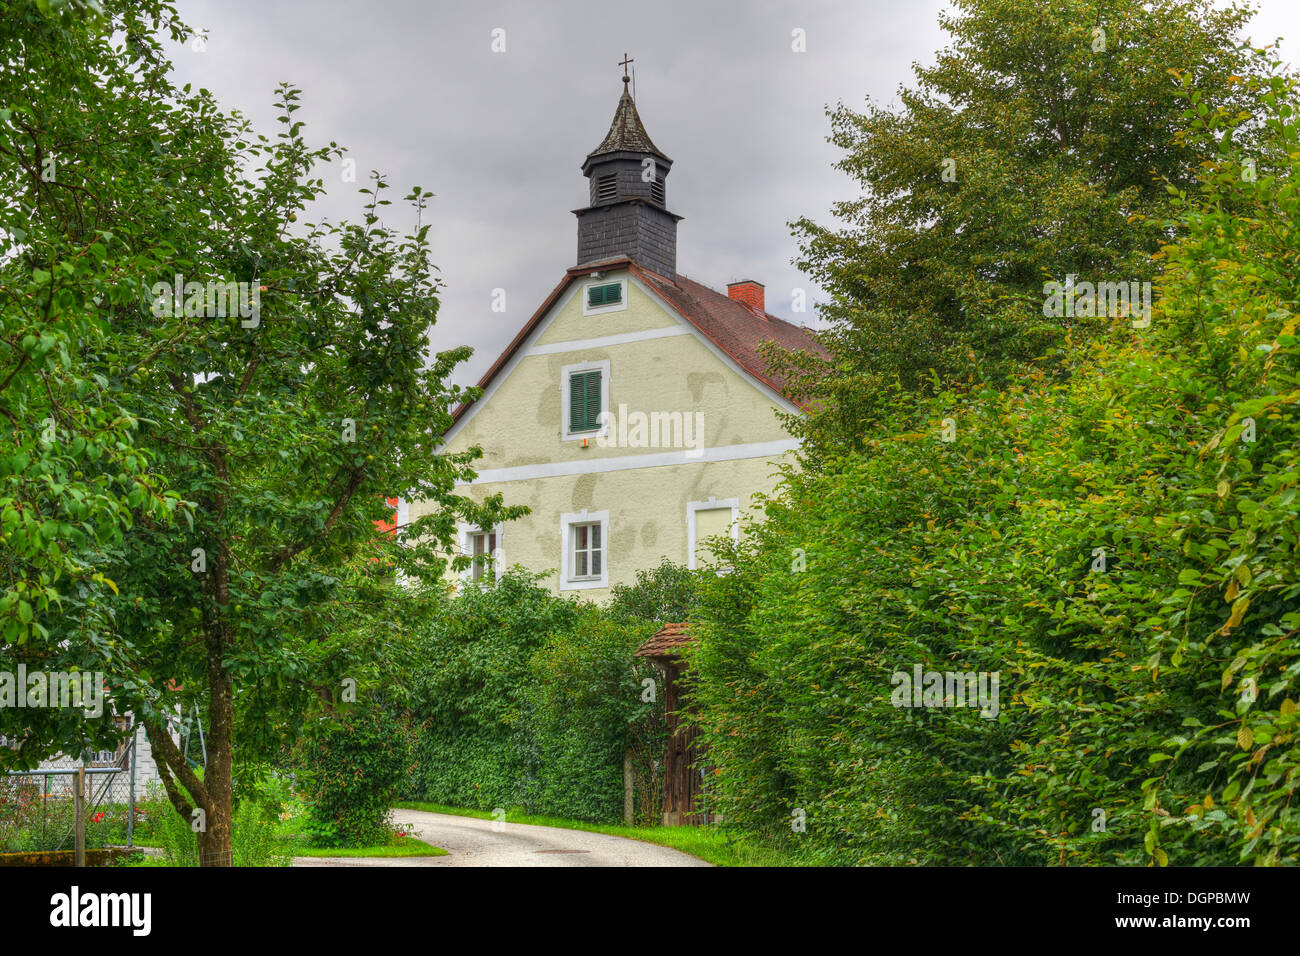 Alfred Kubin building, also known as Kubinhaus or Zwickledt castle, Wernstein am Inn, Innviertel region, Upper Austria, Austria Stock Photo